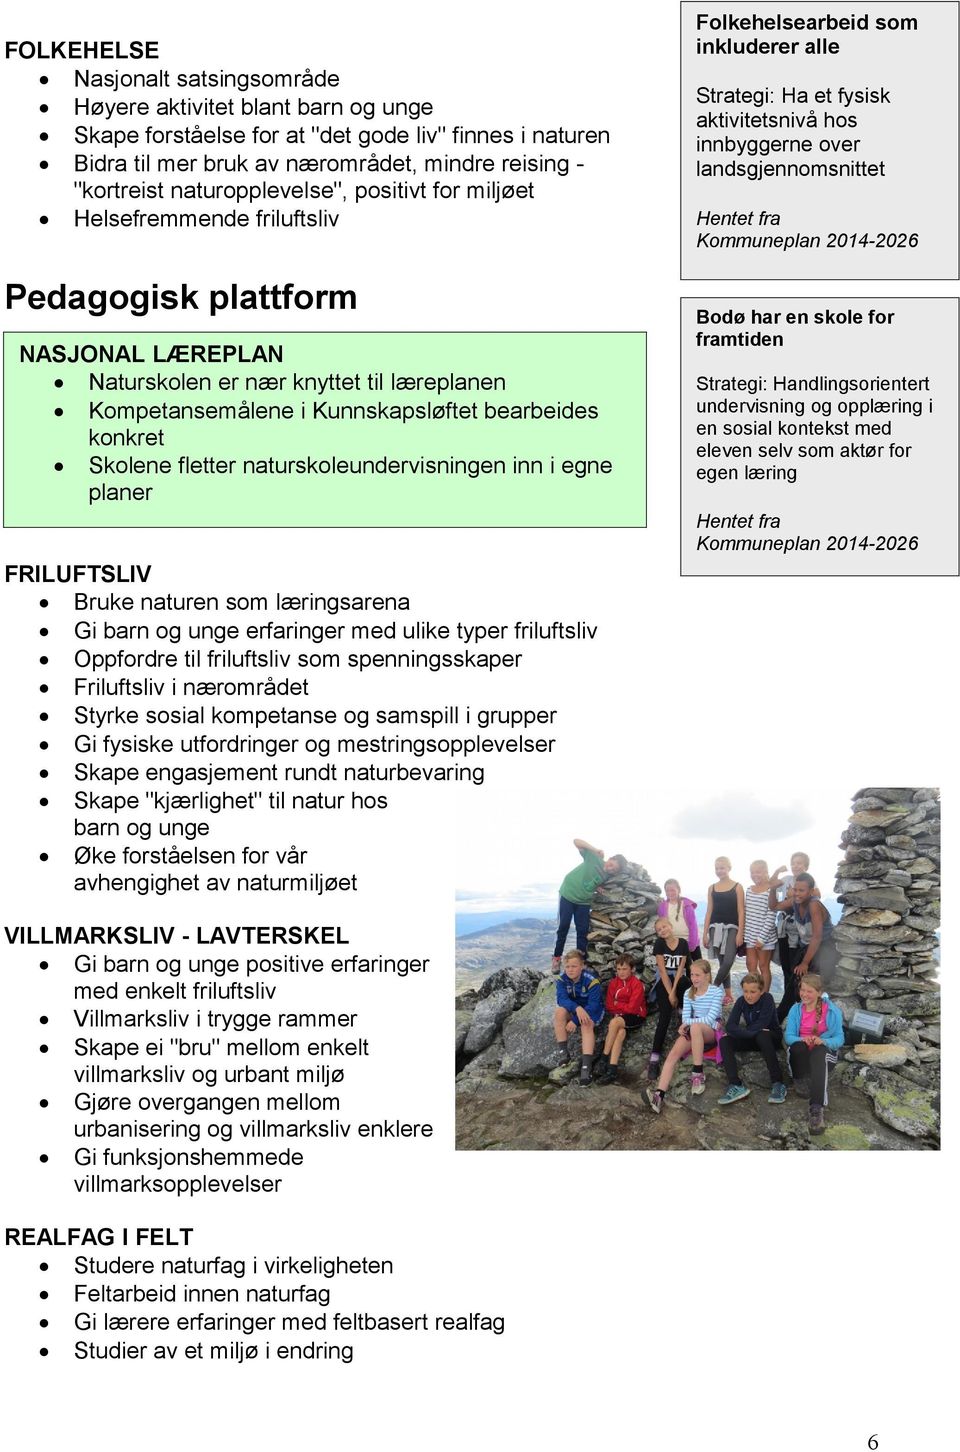 konkret Skolene fletter naturskoleundervisningen inn i egne planer Folkehelsearbeid som inkluderer alle Strategi: Ha et fysisk aktivitetsnivå hos innbyggerne over landsgjennomsnittet Bodø har en